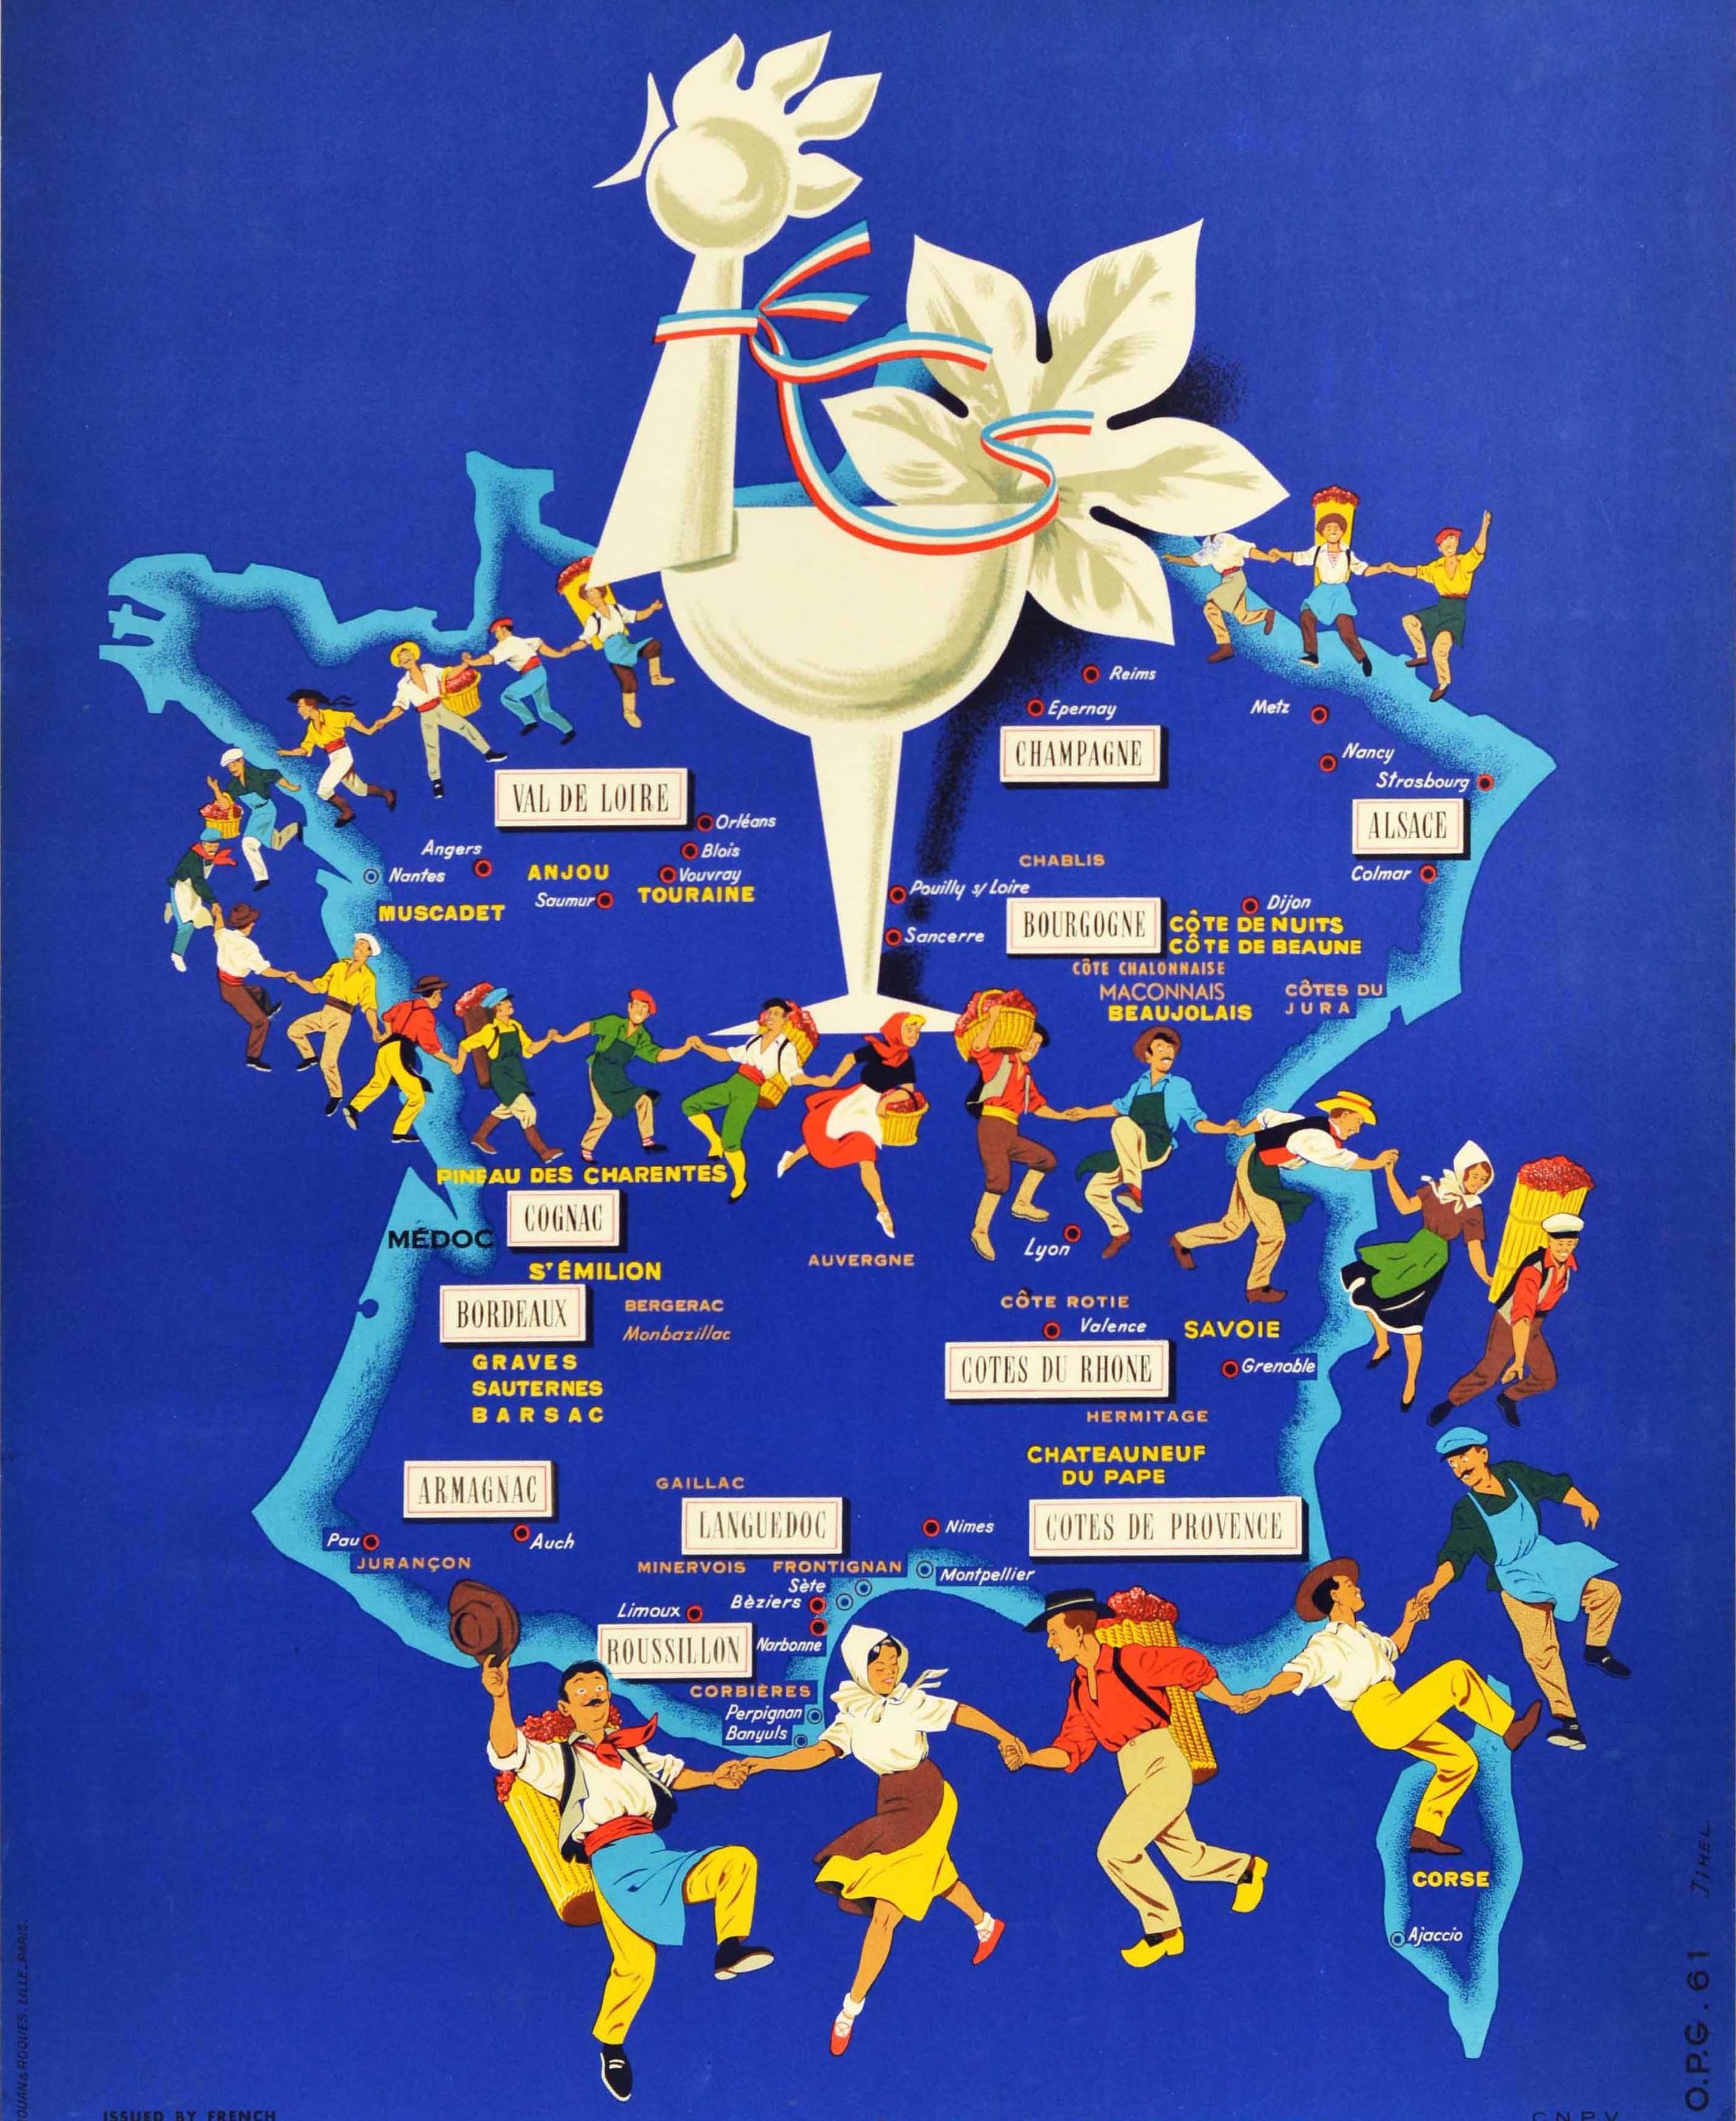 Affiche publicitaire originale pour The Vineyards Of France / Les Vignobles De France Production Metropolitaine avec une carte colorée montrant une ligne de viticulteurs et de vendeurs dansant, certains portant des paniers de raisins, avec les